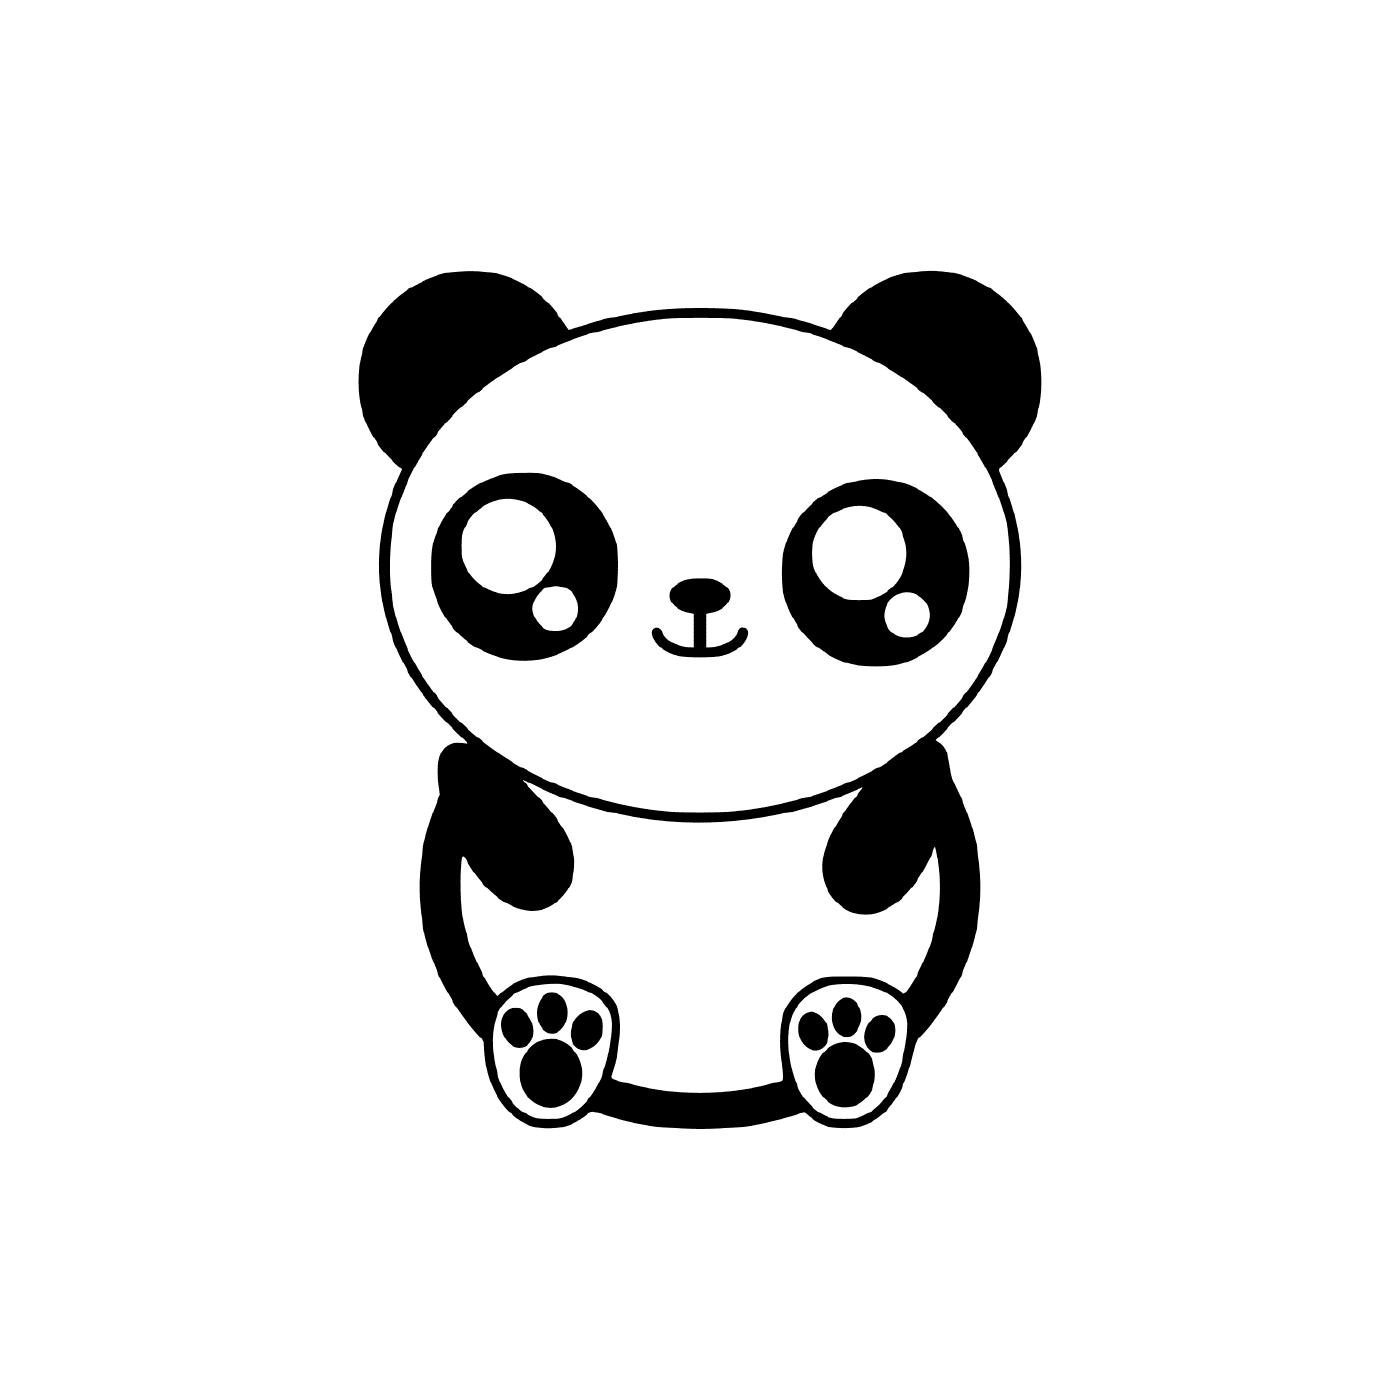  сладкая, очаровательная панда 